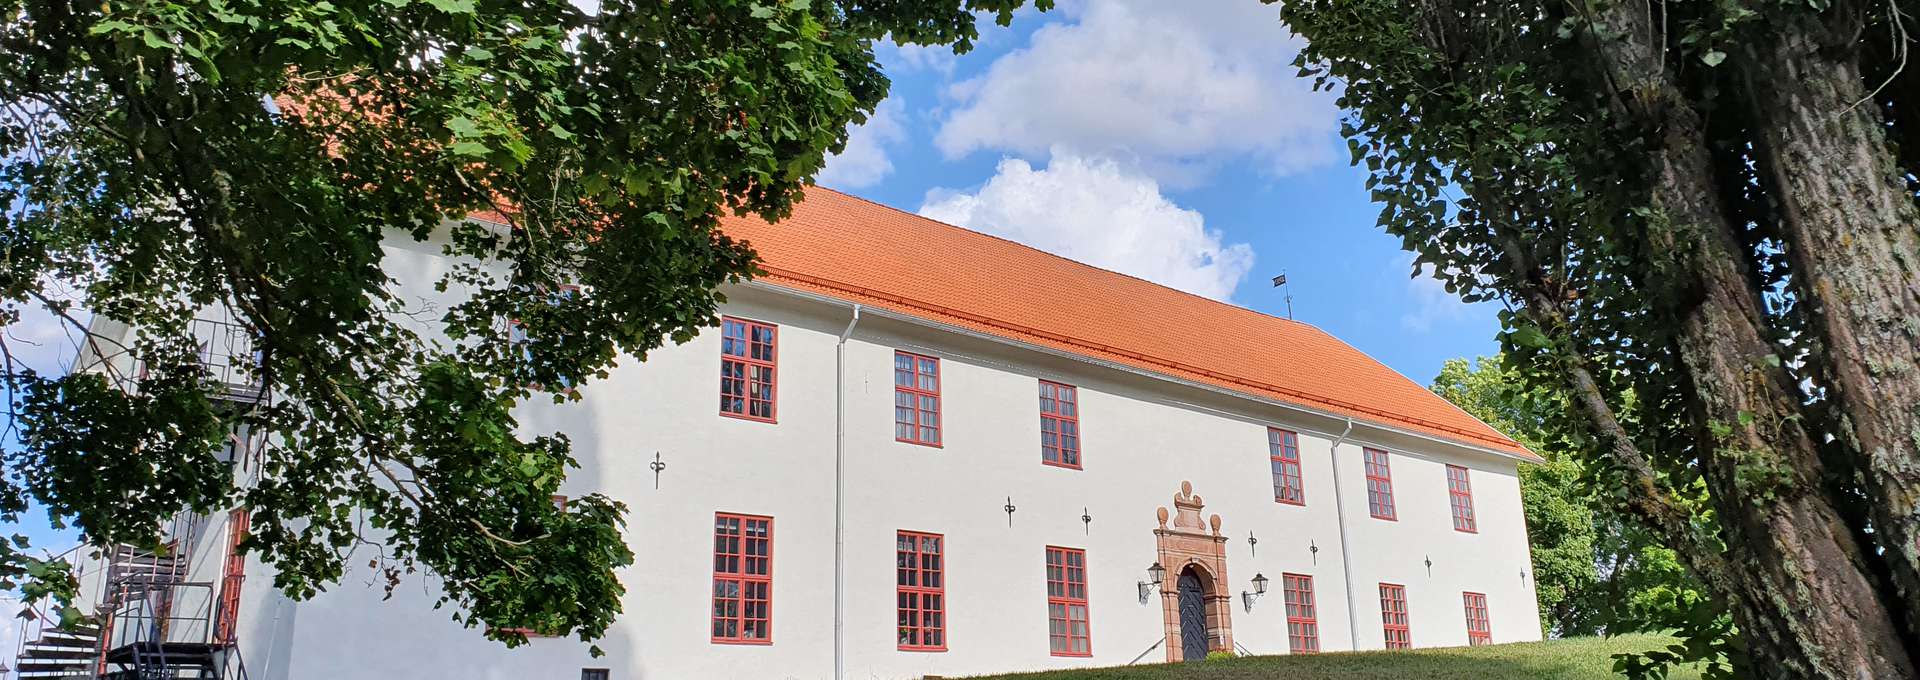 Sundbyholms castle